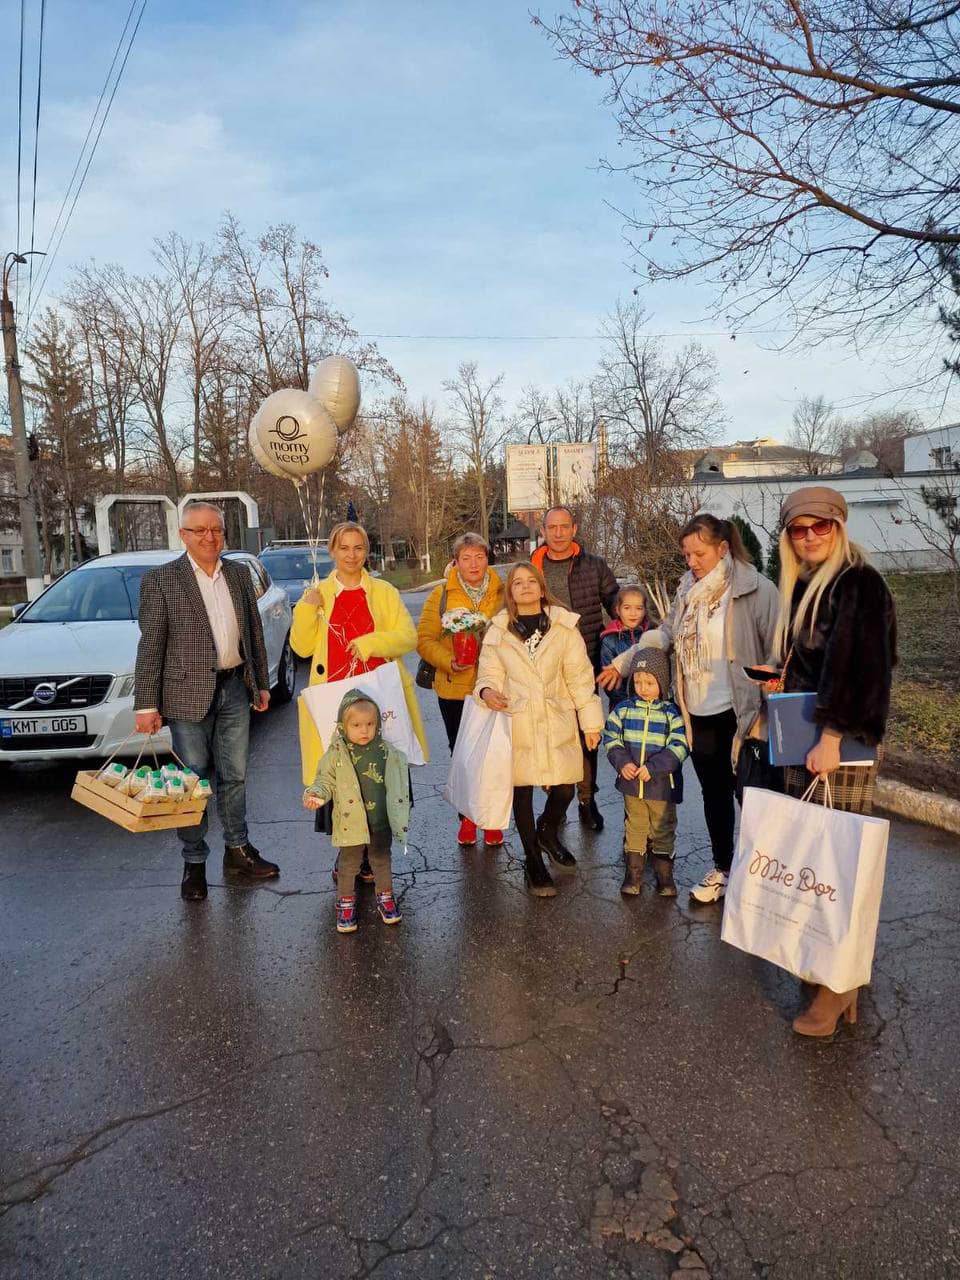 (ФОТО) Мэрия Кишинева поздравила первого ребенка, родившегося в новогоднюю ночь